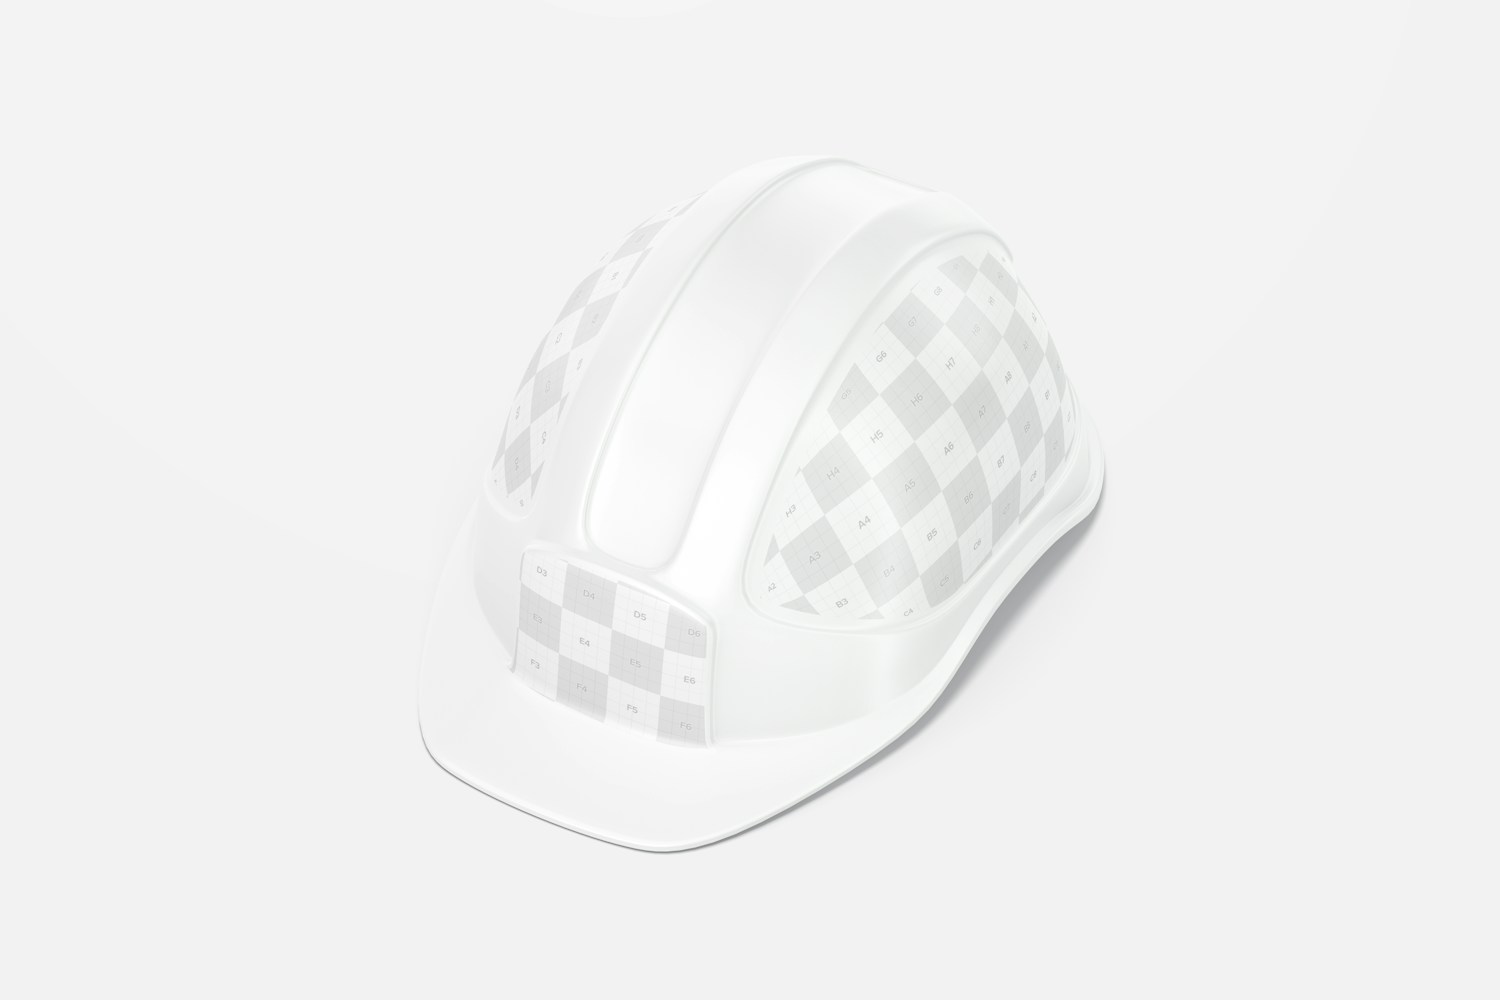 Construction Helmet Mockup, Perspective View